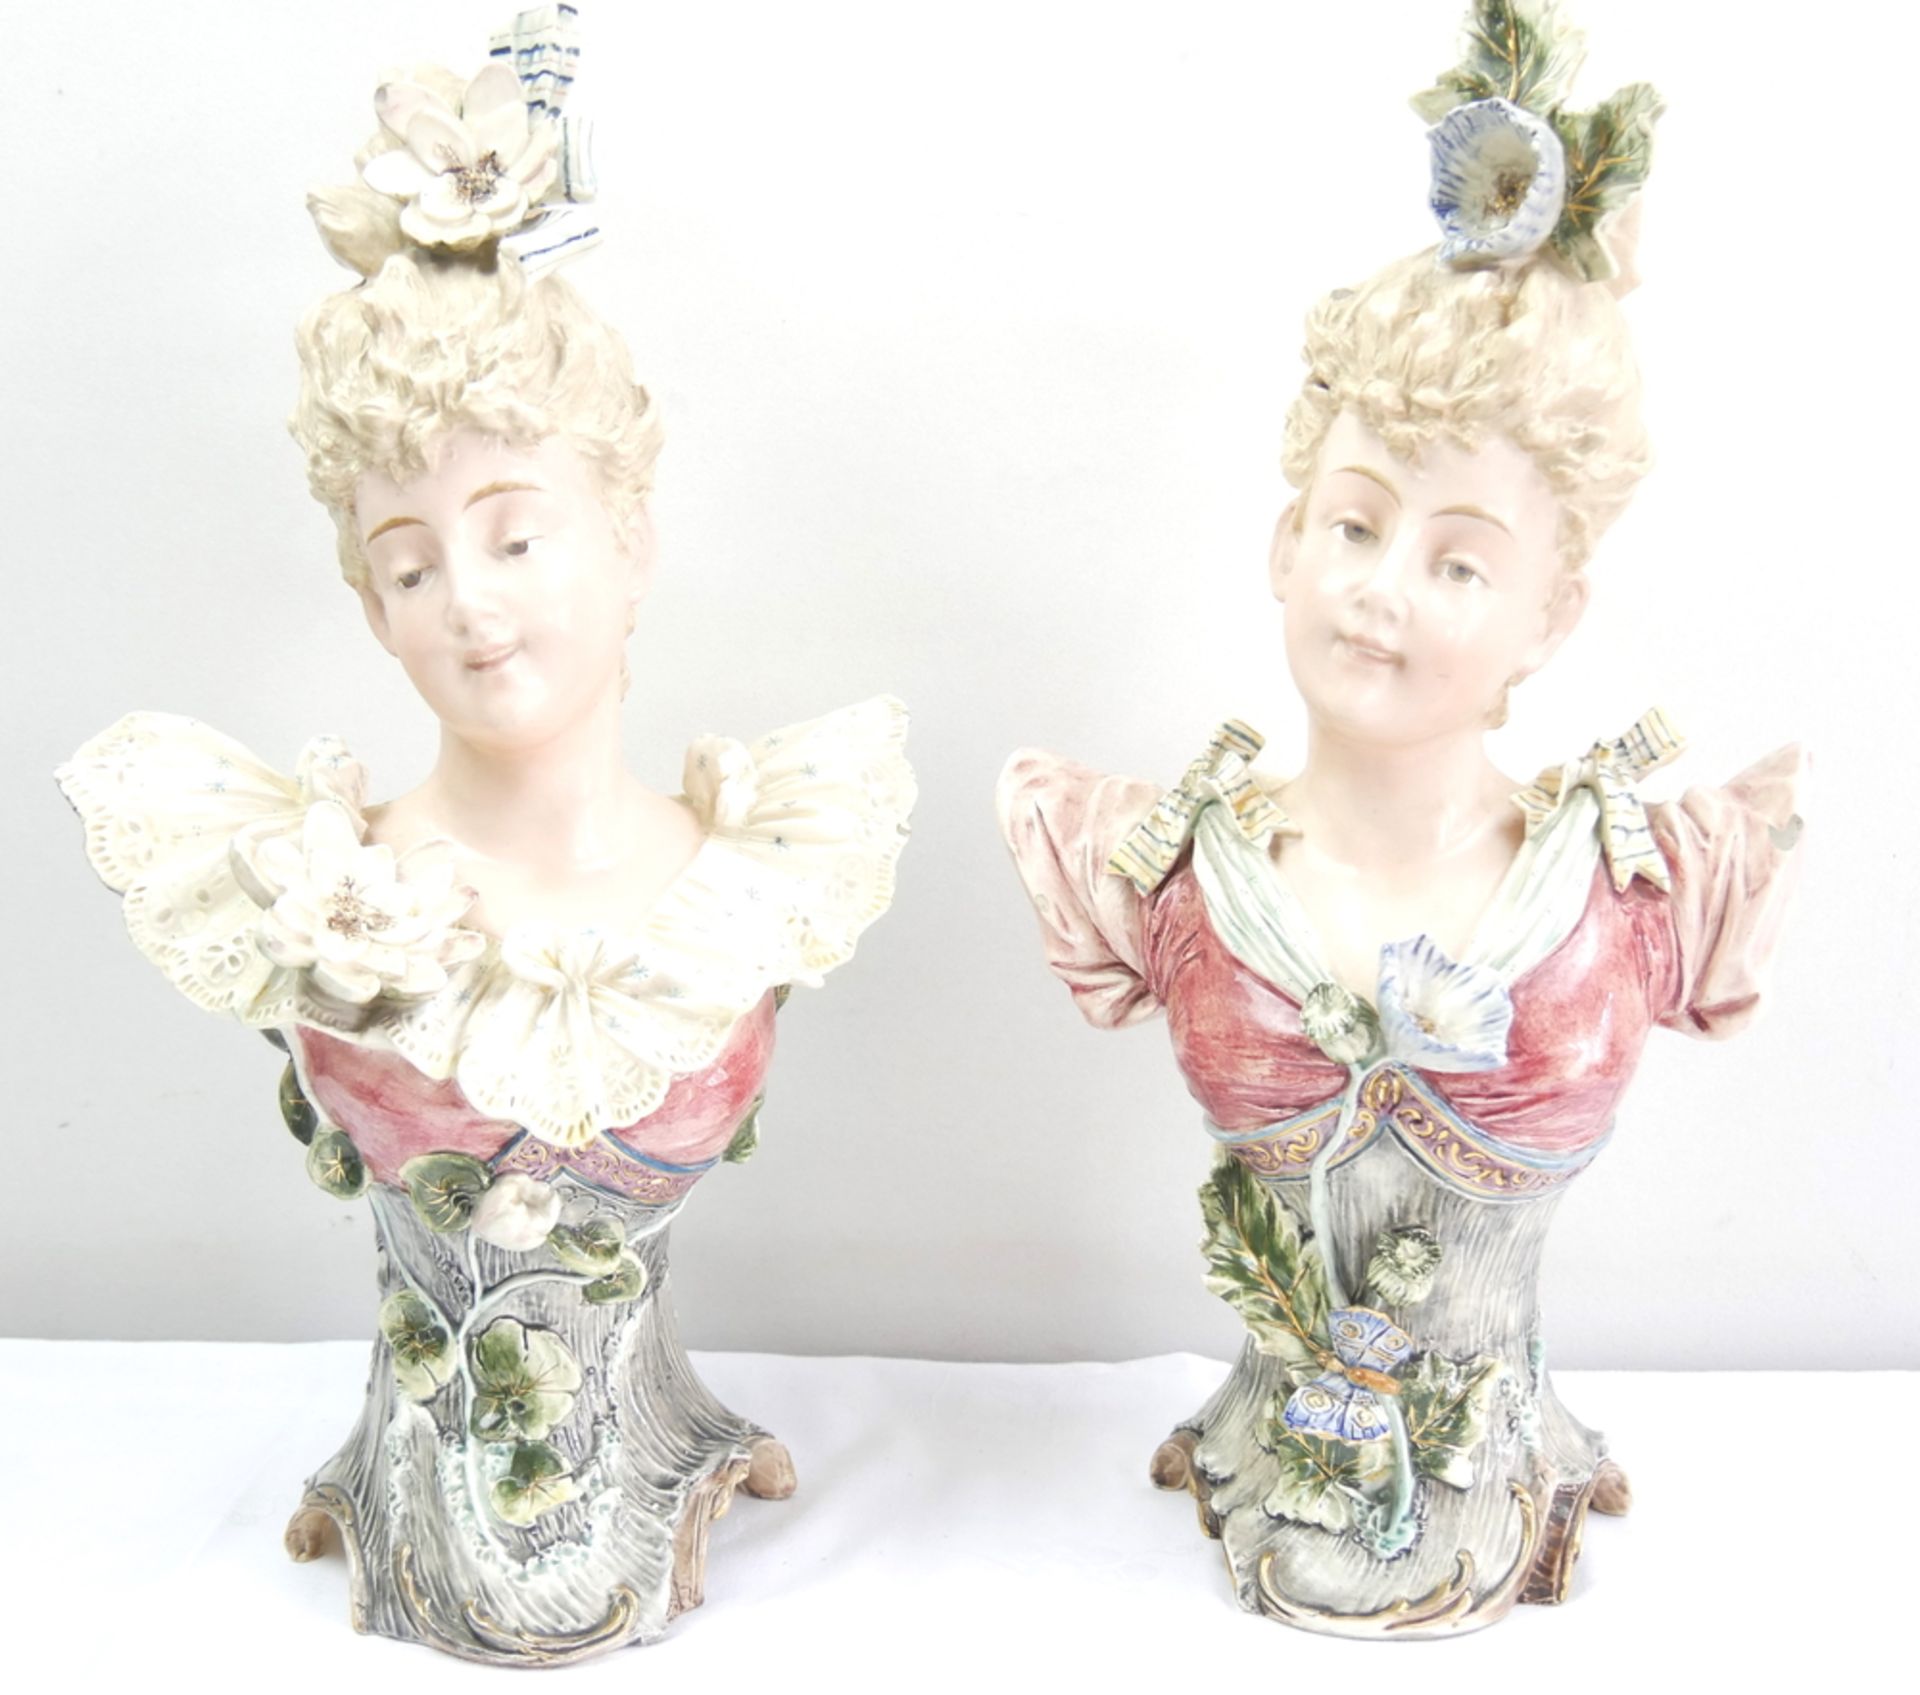 2 alte Jugendstil Porzellanbüsten, Frauen mit Blumen geschmückt, teilweise mit Chips, gemarkt mit